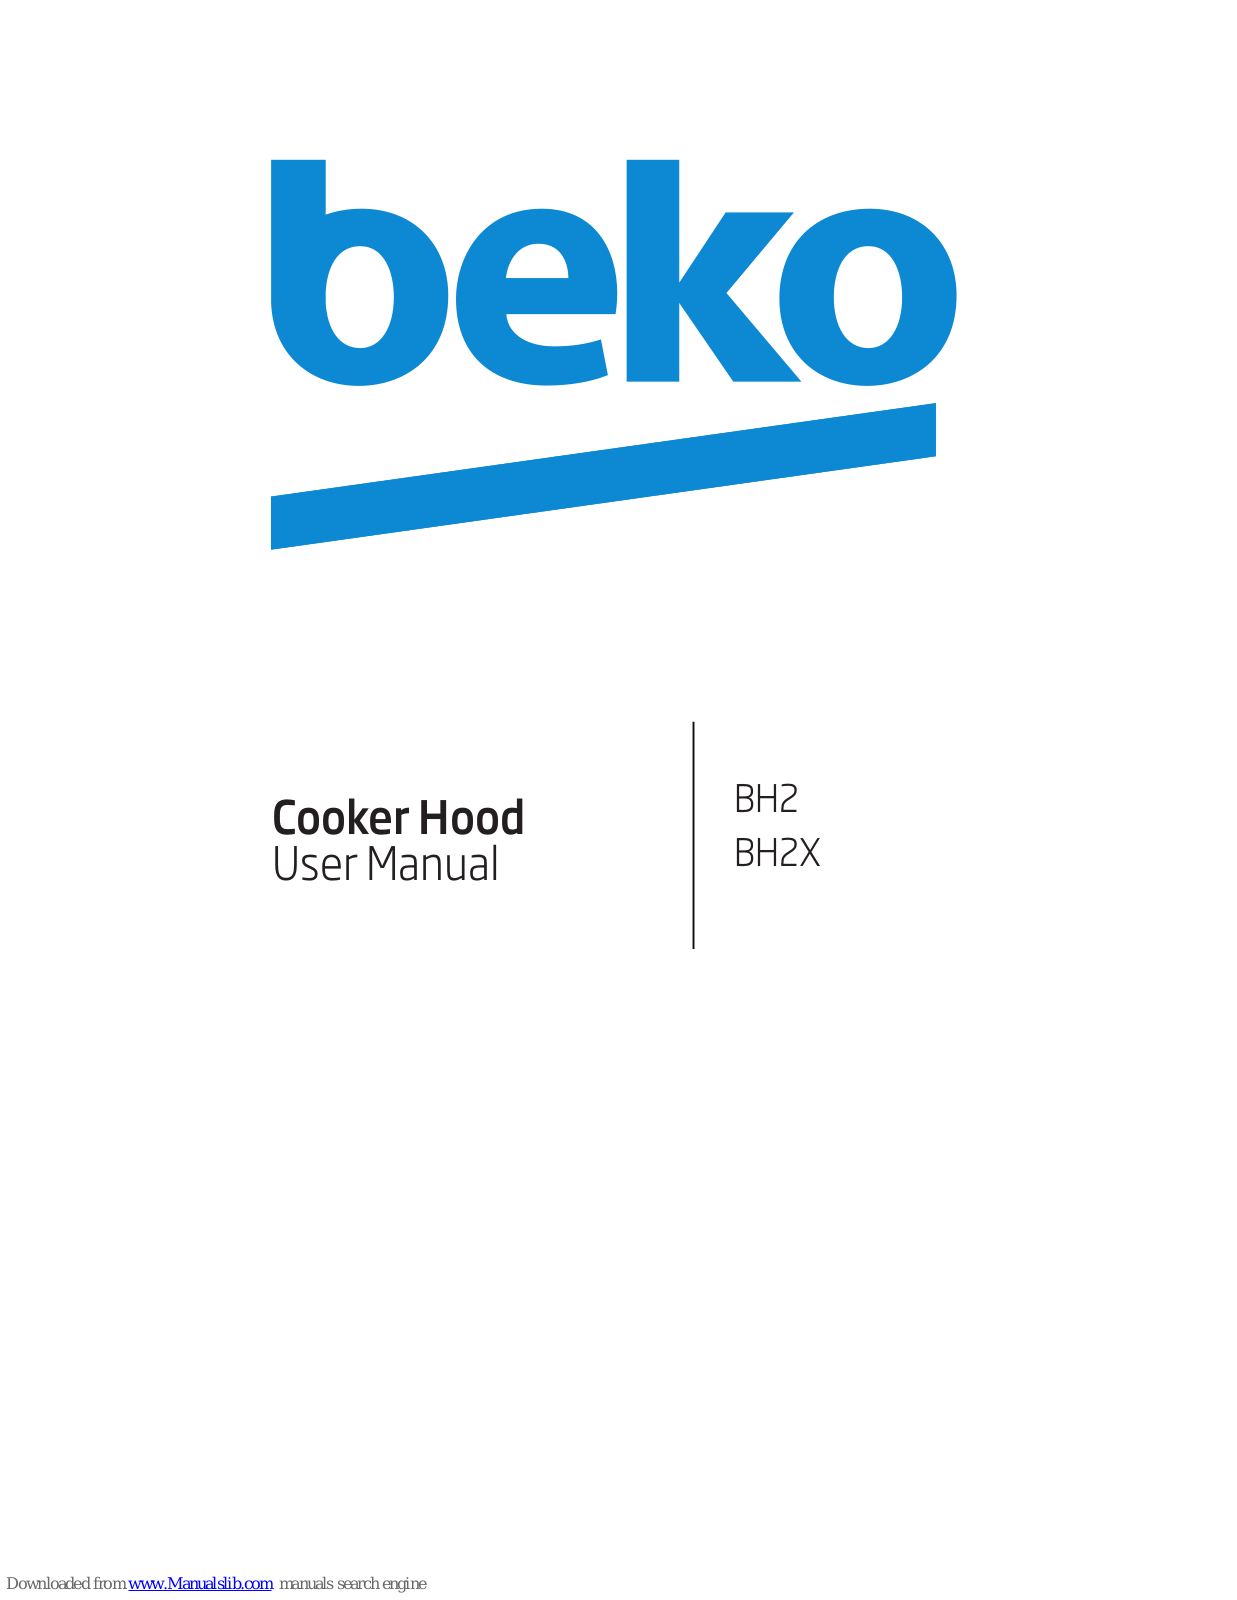 Beko BH2, BH2X User Manual